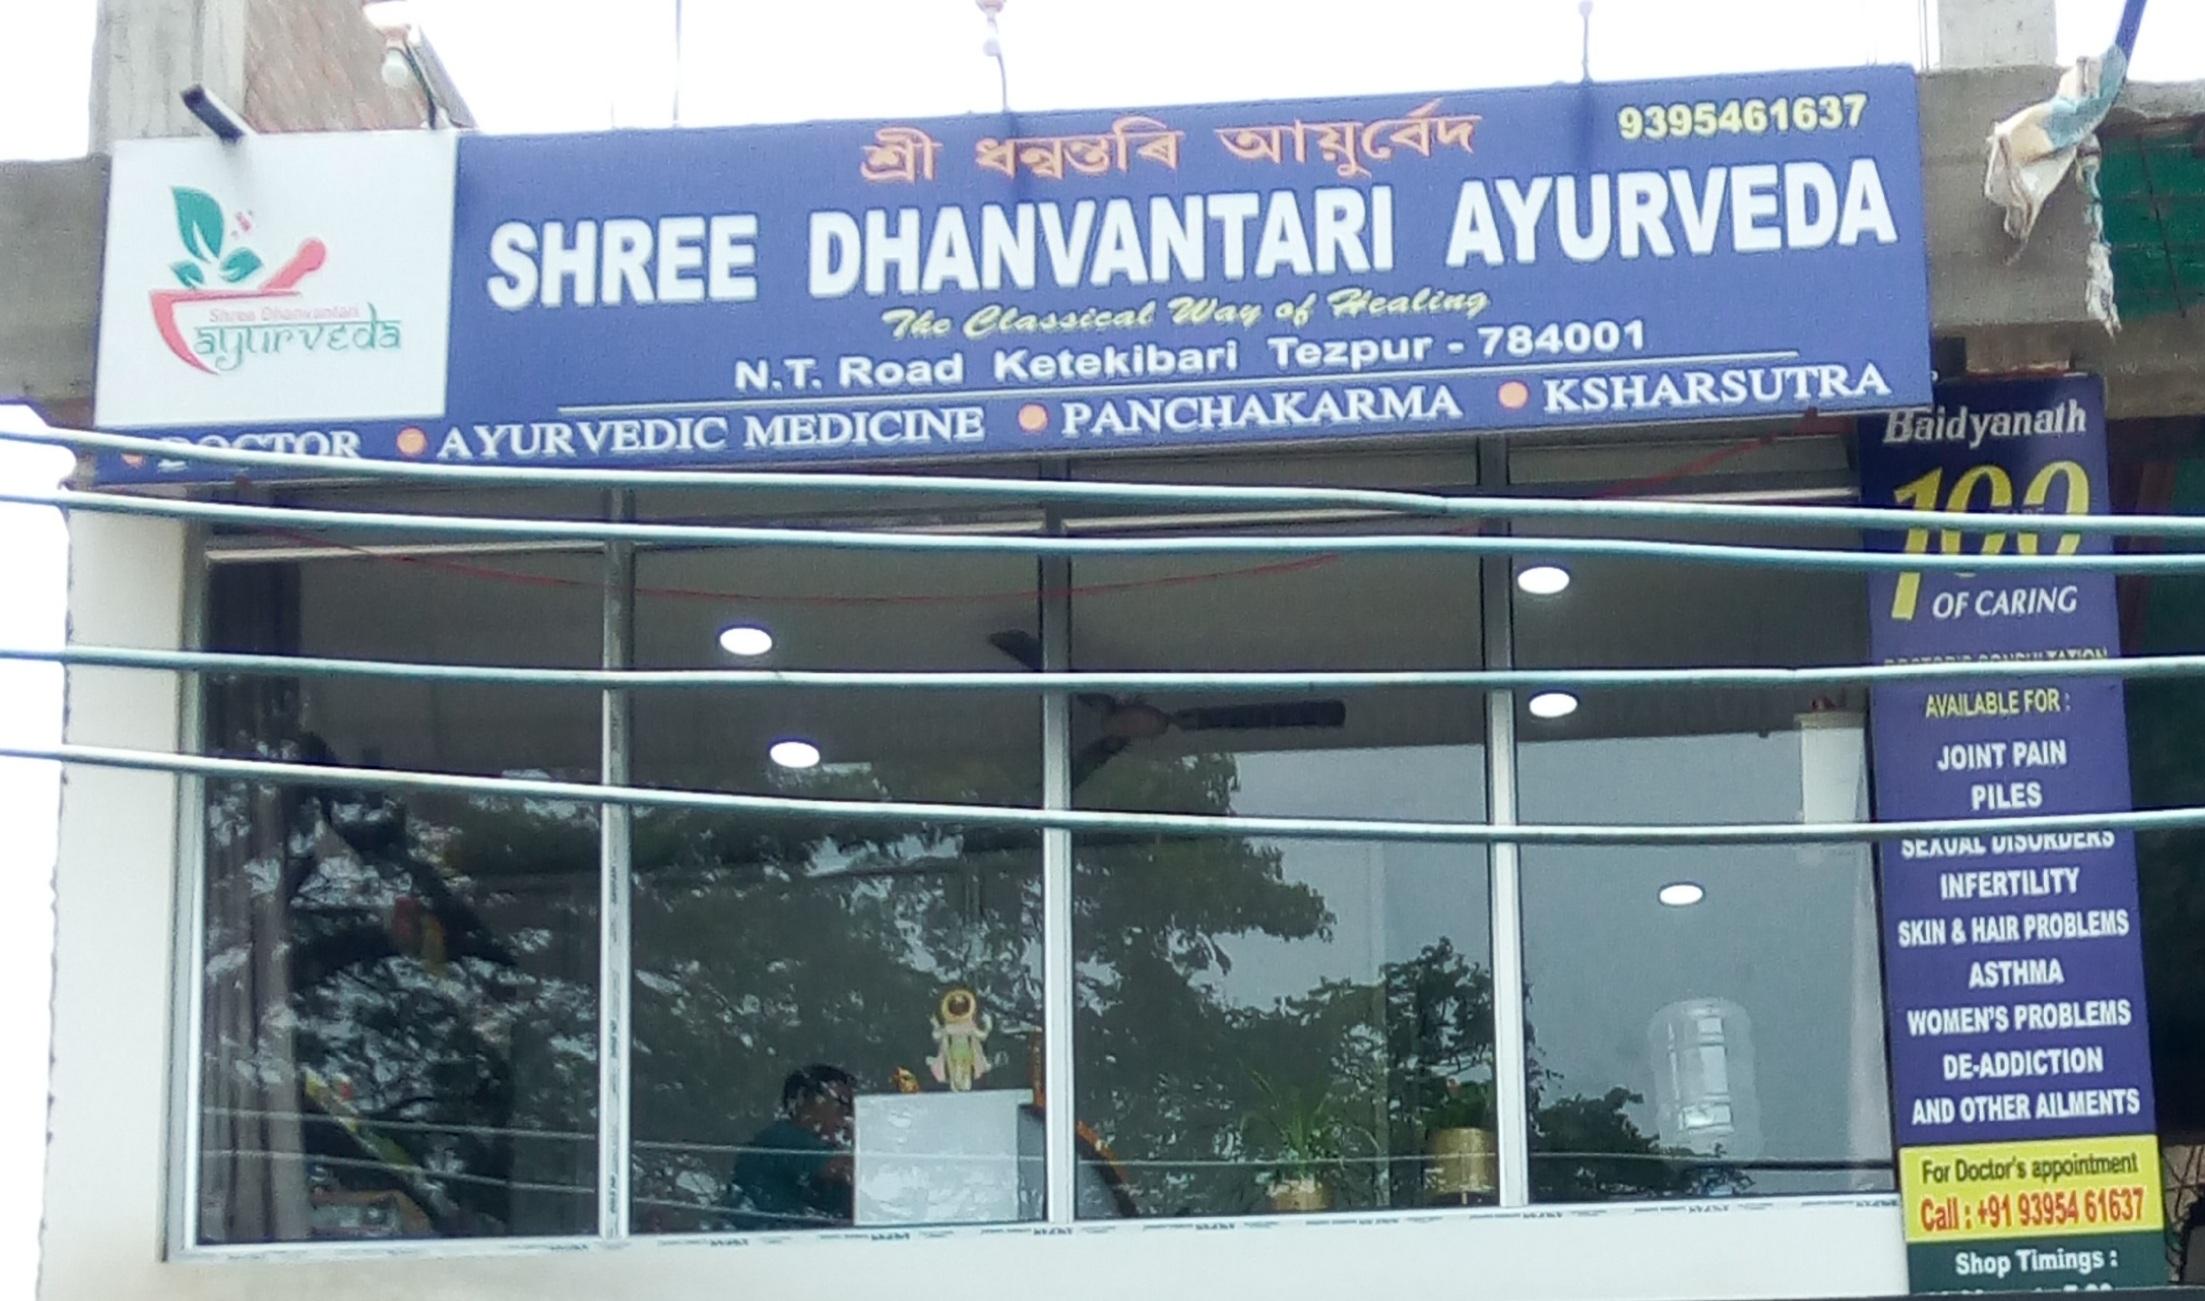 Shree Dhanvantari Ayurveda